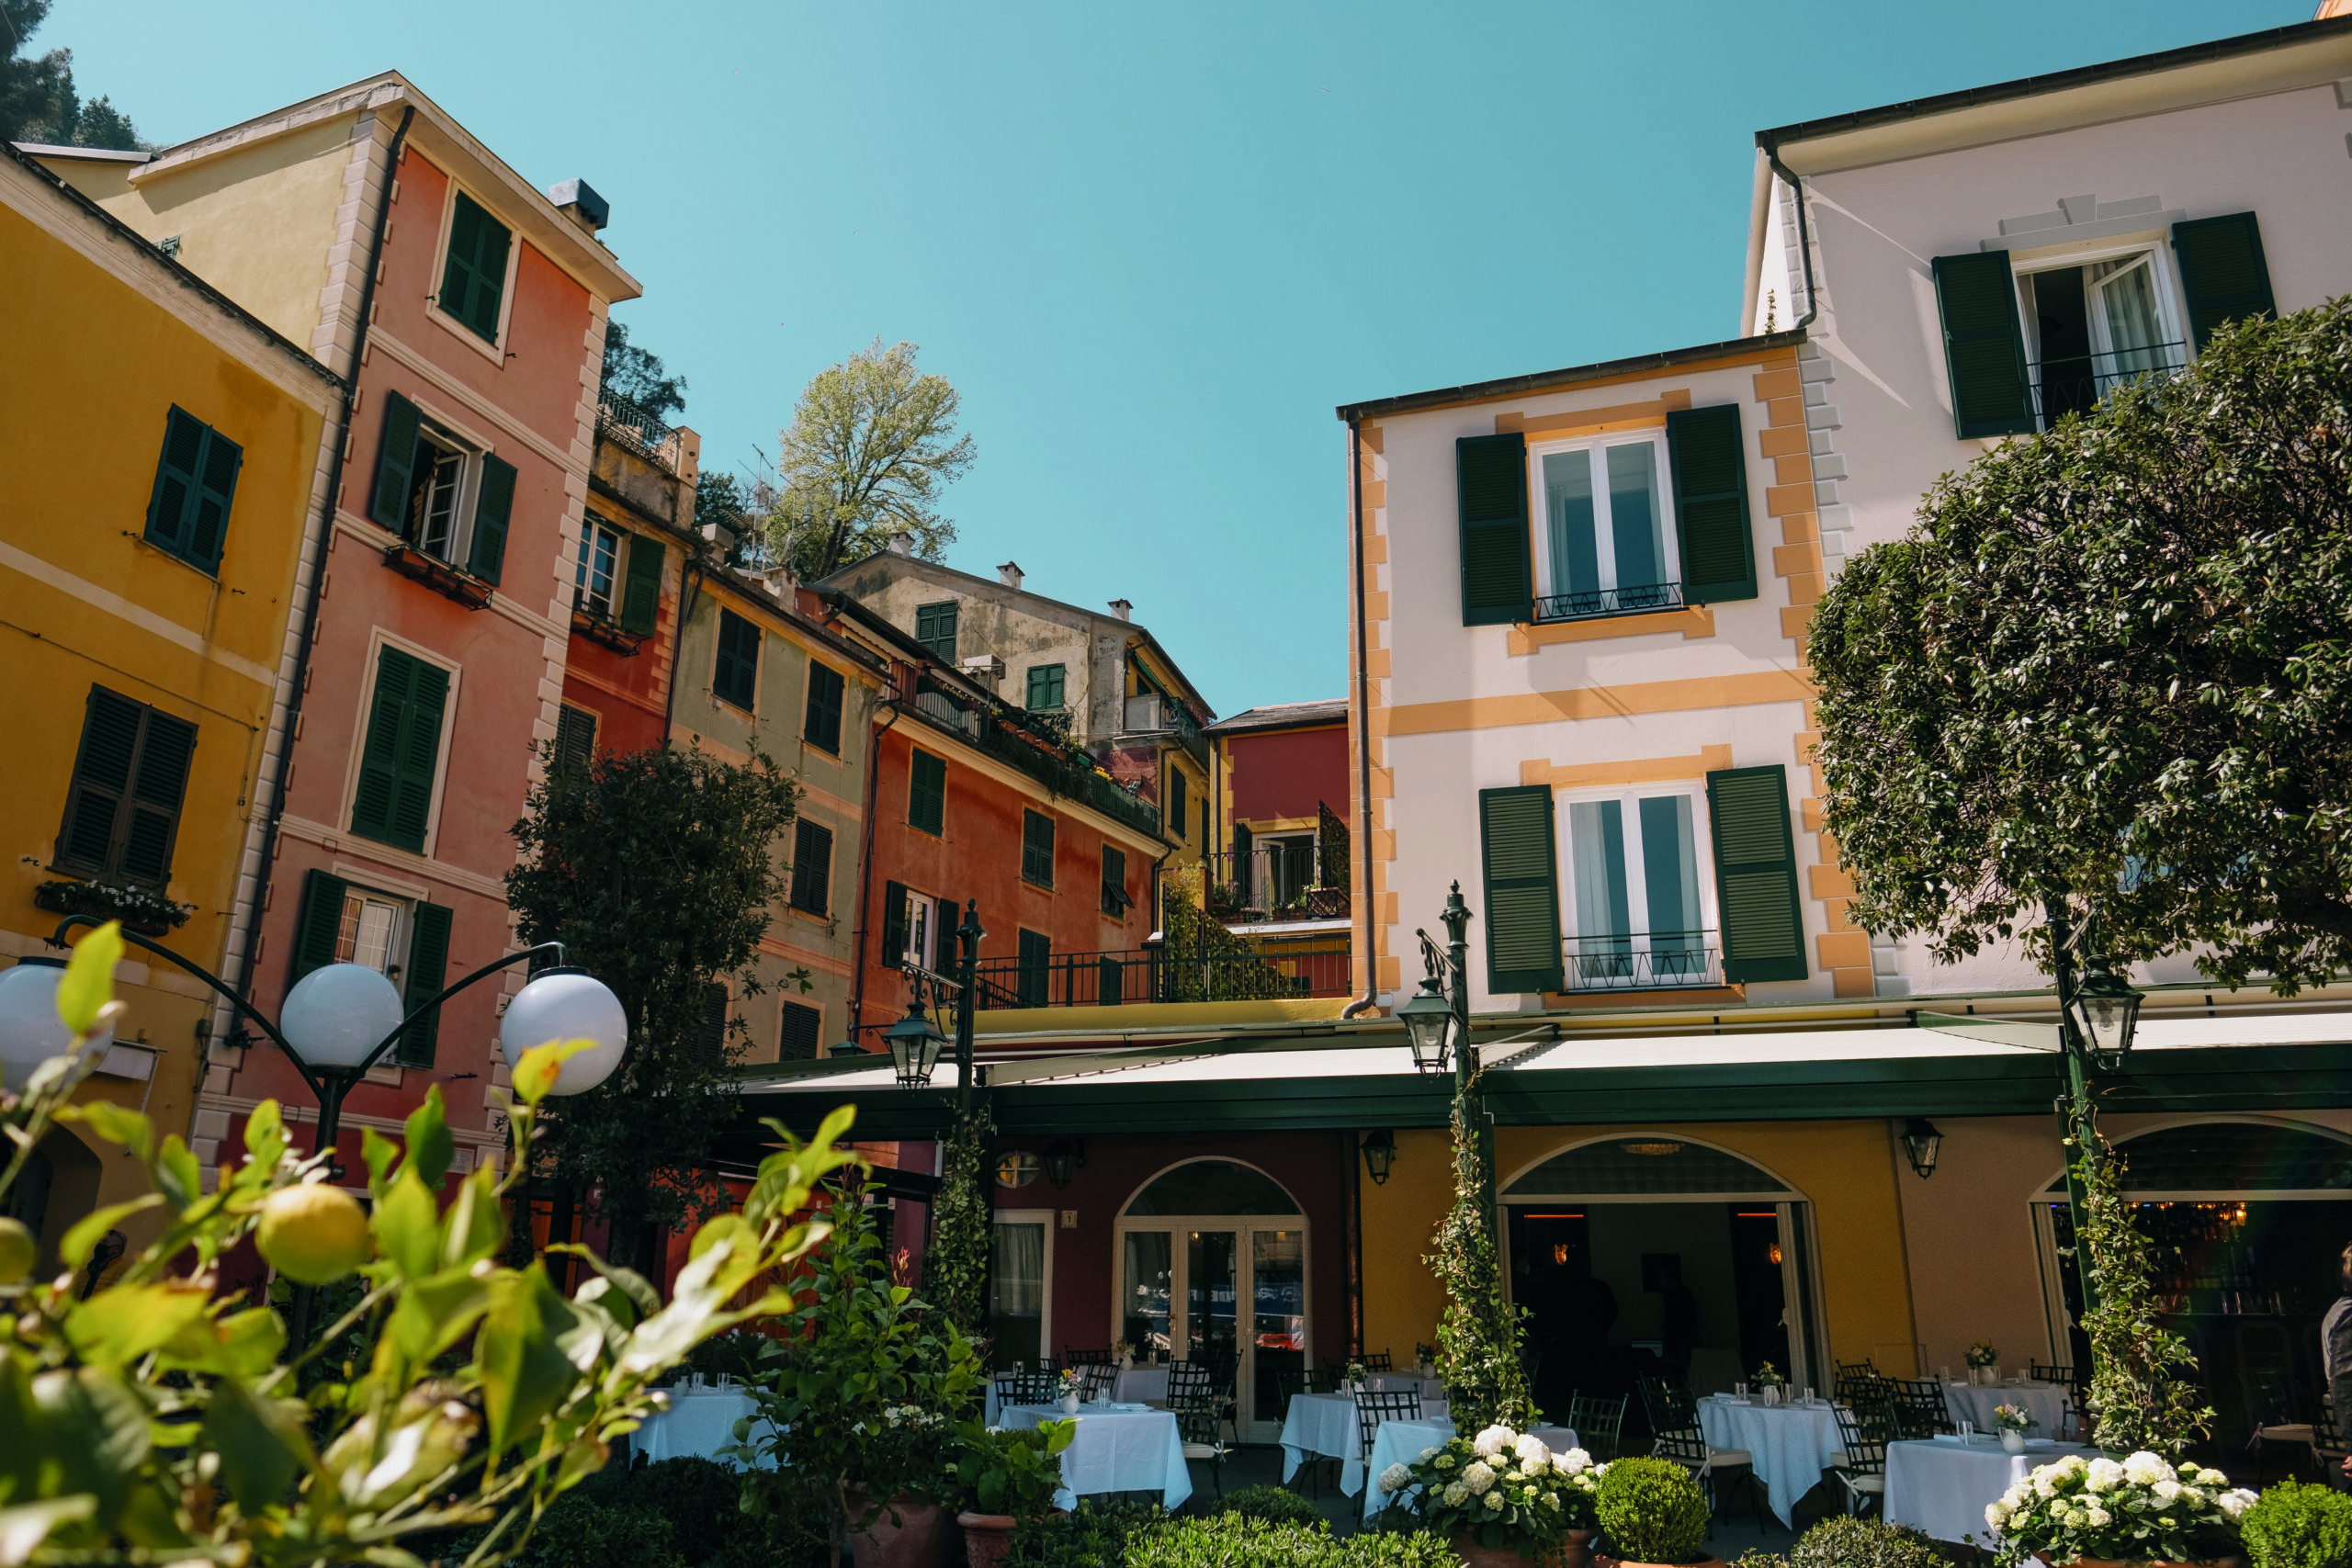 Splendido Mare Portofino, Belmond Hotel, articolo su Beyond the Magazine